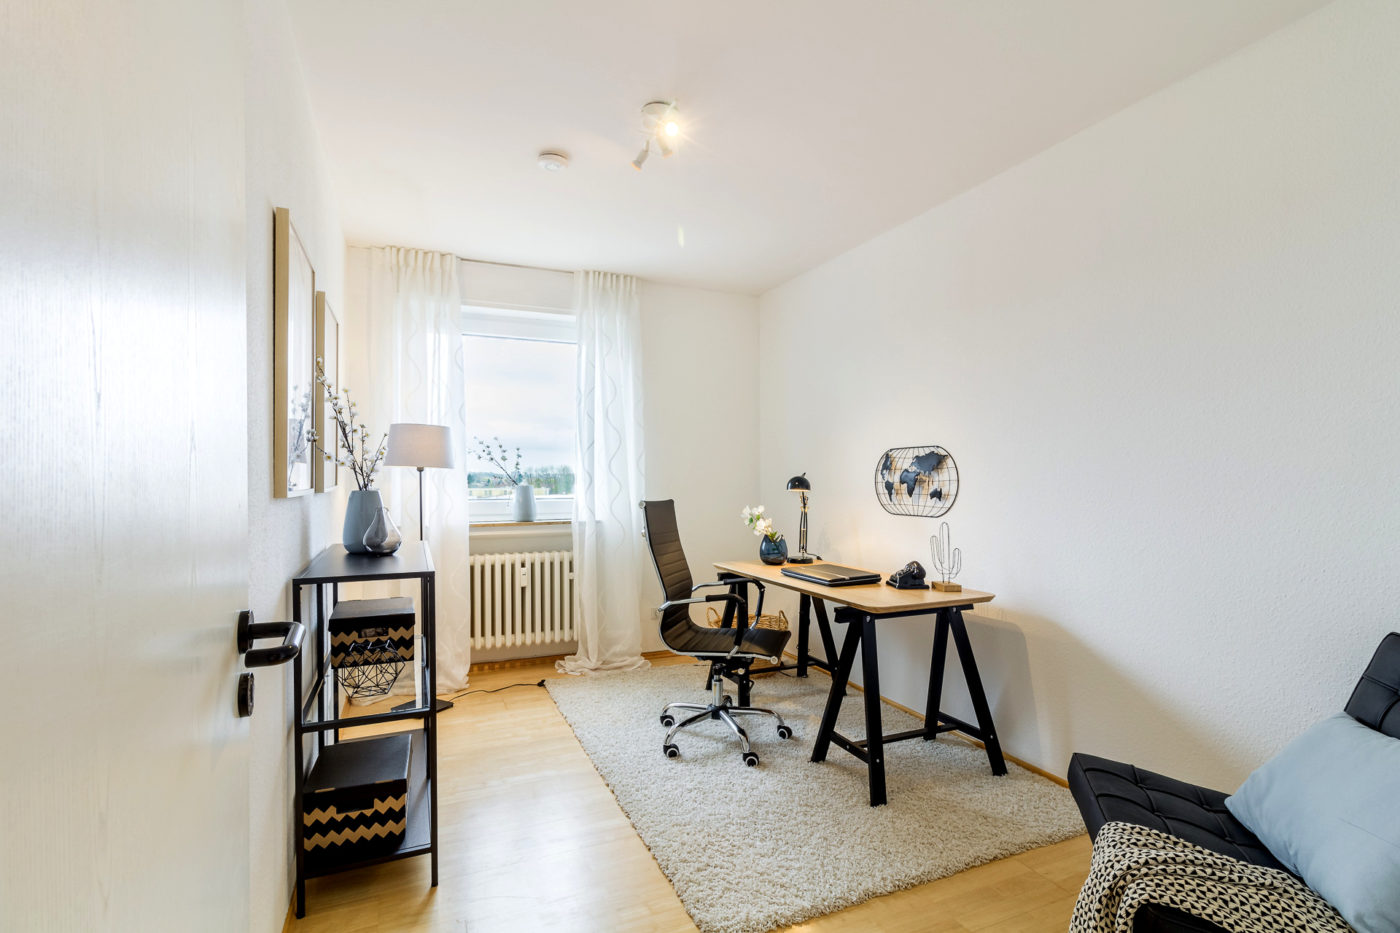 Arbeitszimmer nach dem Homestaging durch Nicole Biernath von Blickfang Homestaging in Soest